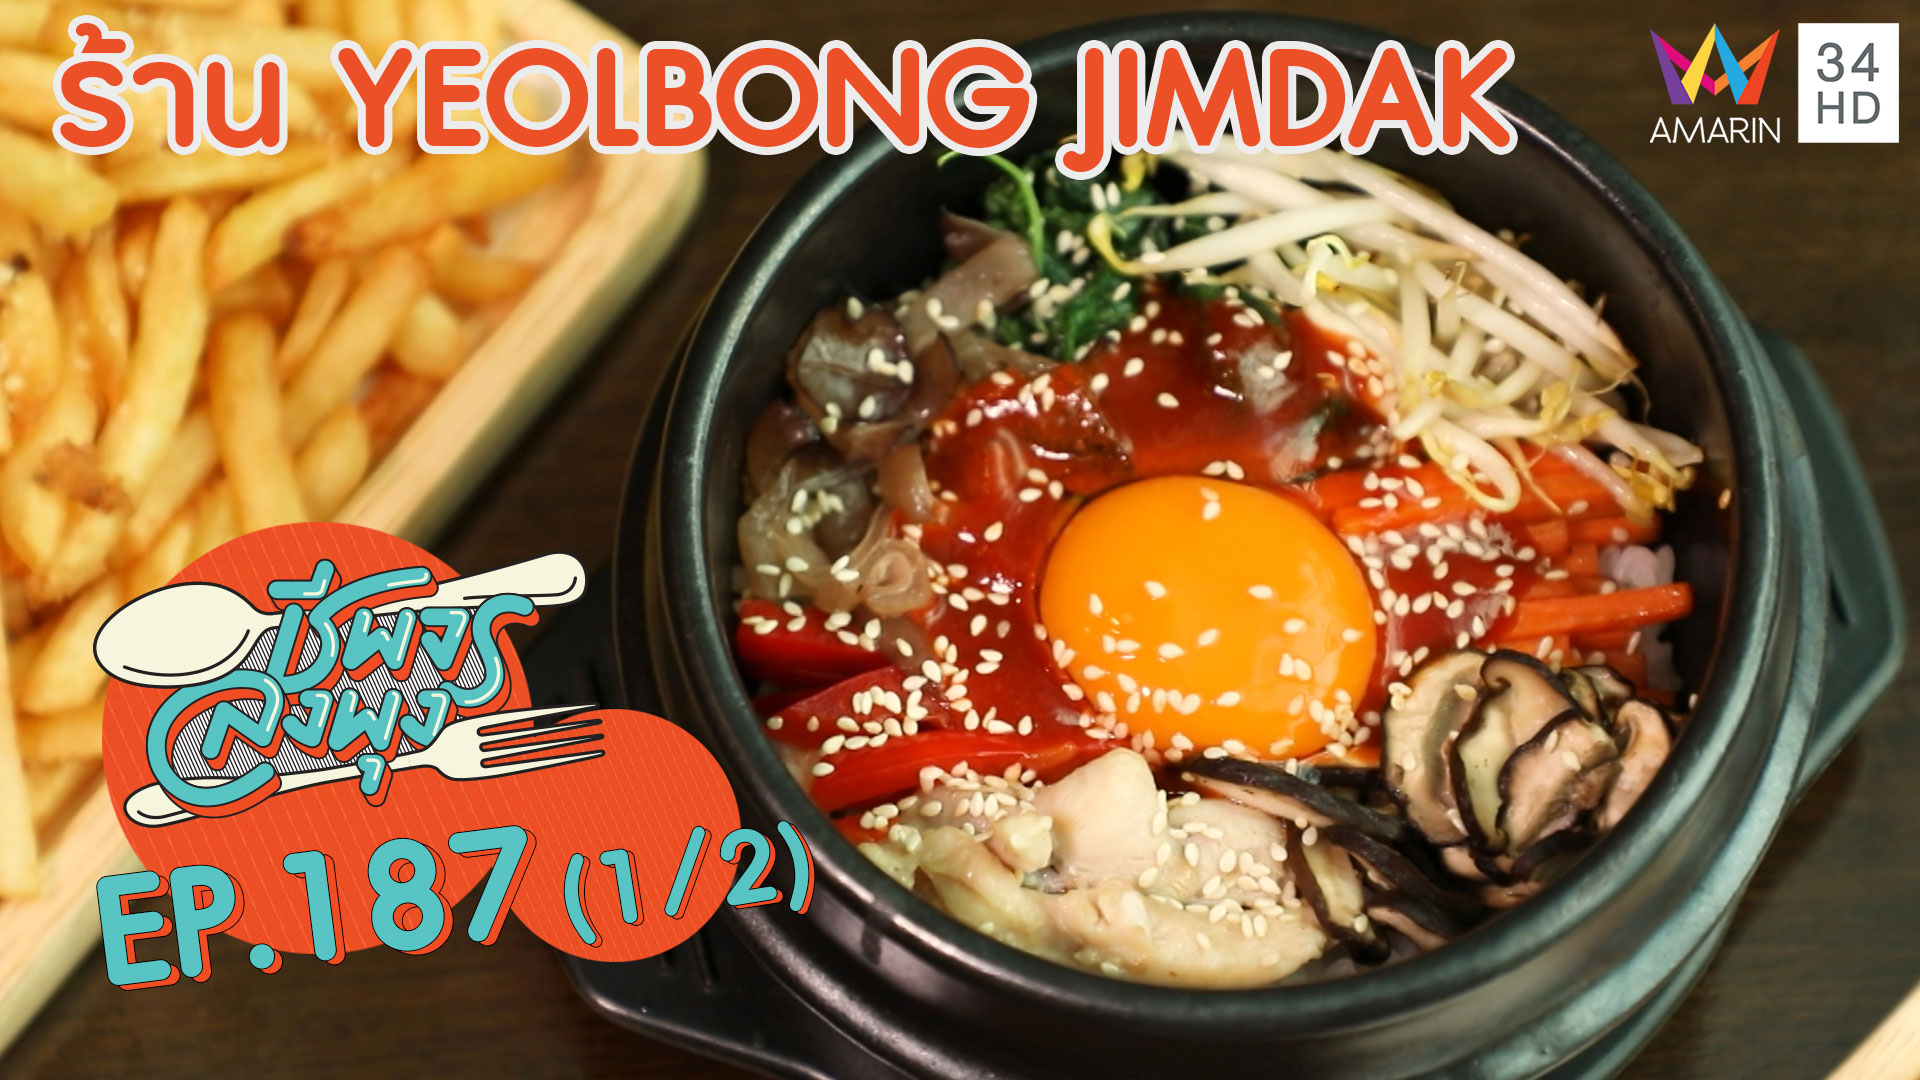 ชีพจรลงพุง ซีซั่น 5 | อิ่มจุใจกับอาหารเกาหลีสุดแซ่บ @"ร้าน Yeolbong Jimdak"|4 ม.ค. 63 (1/2)